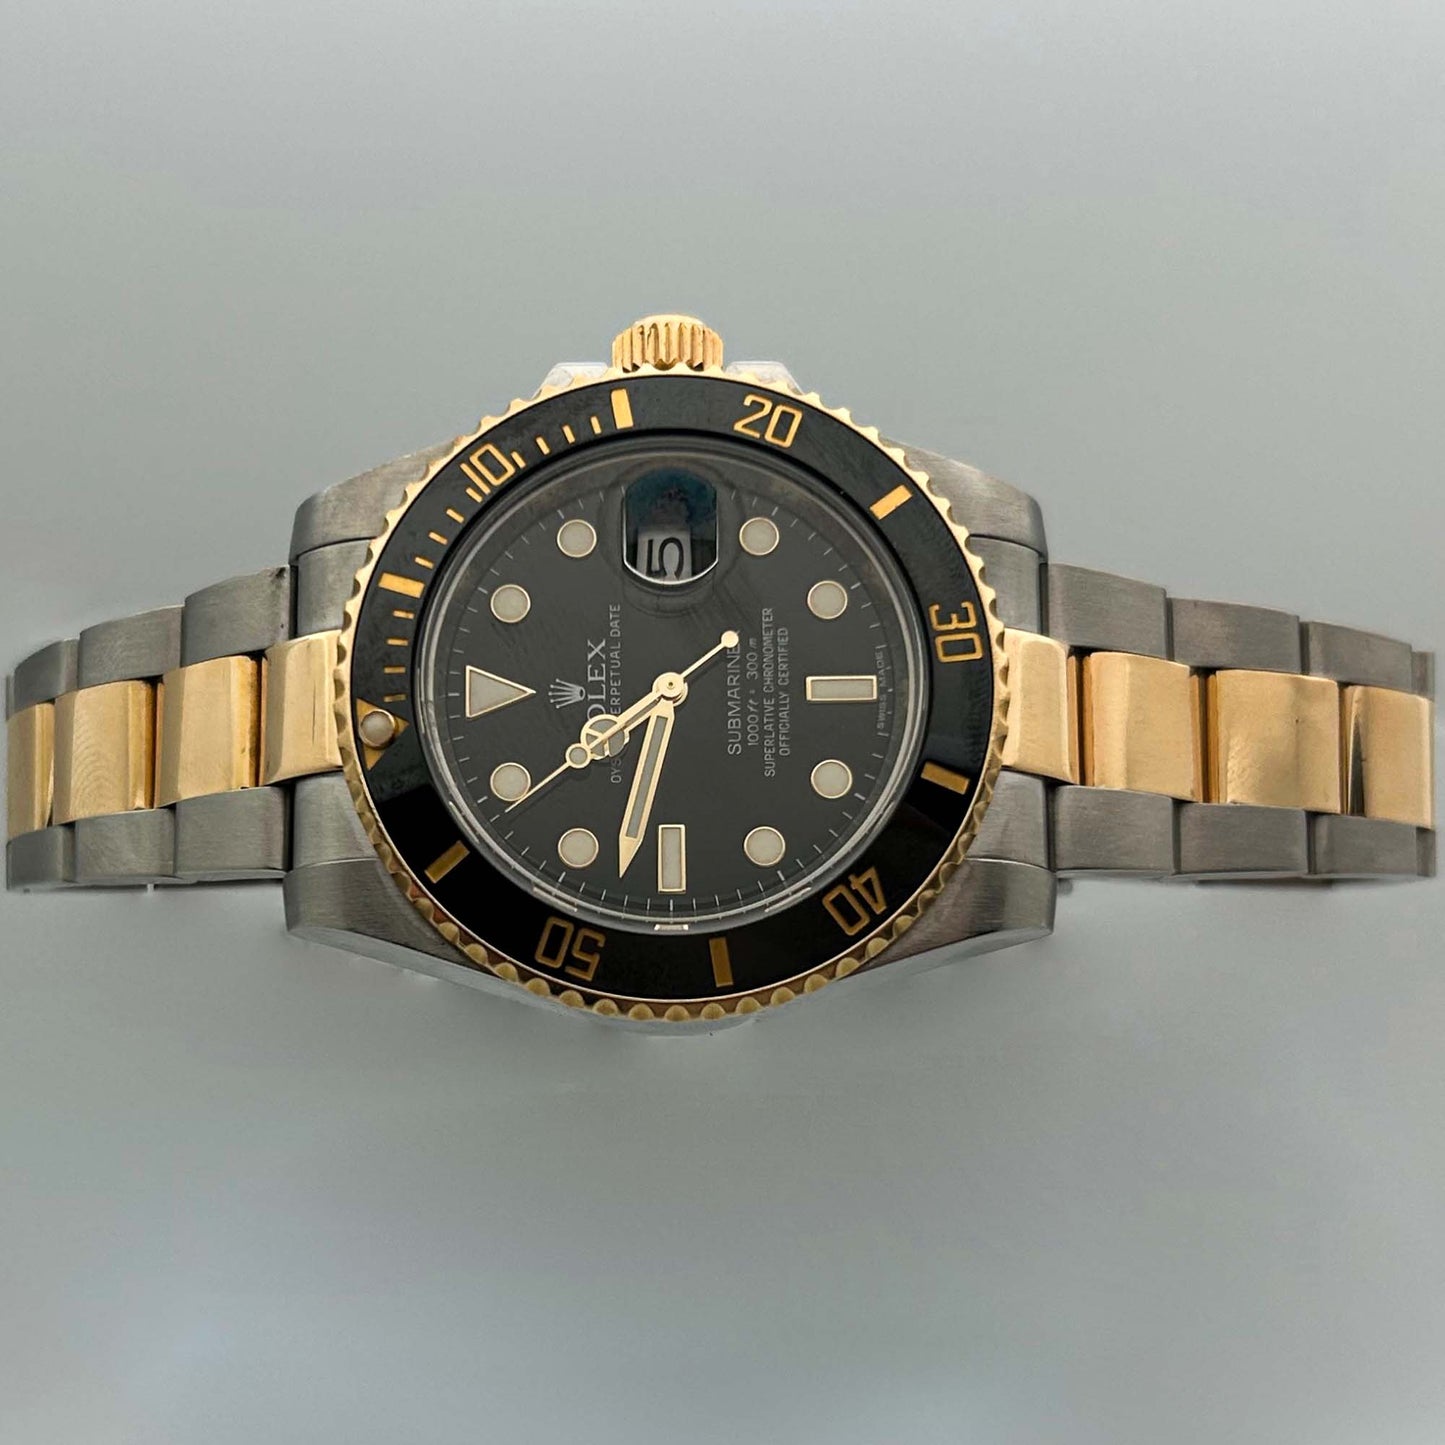 2011 Rolex Submariner Watch Reflection